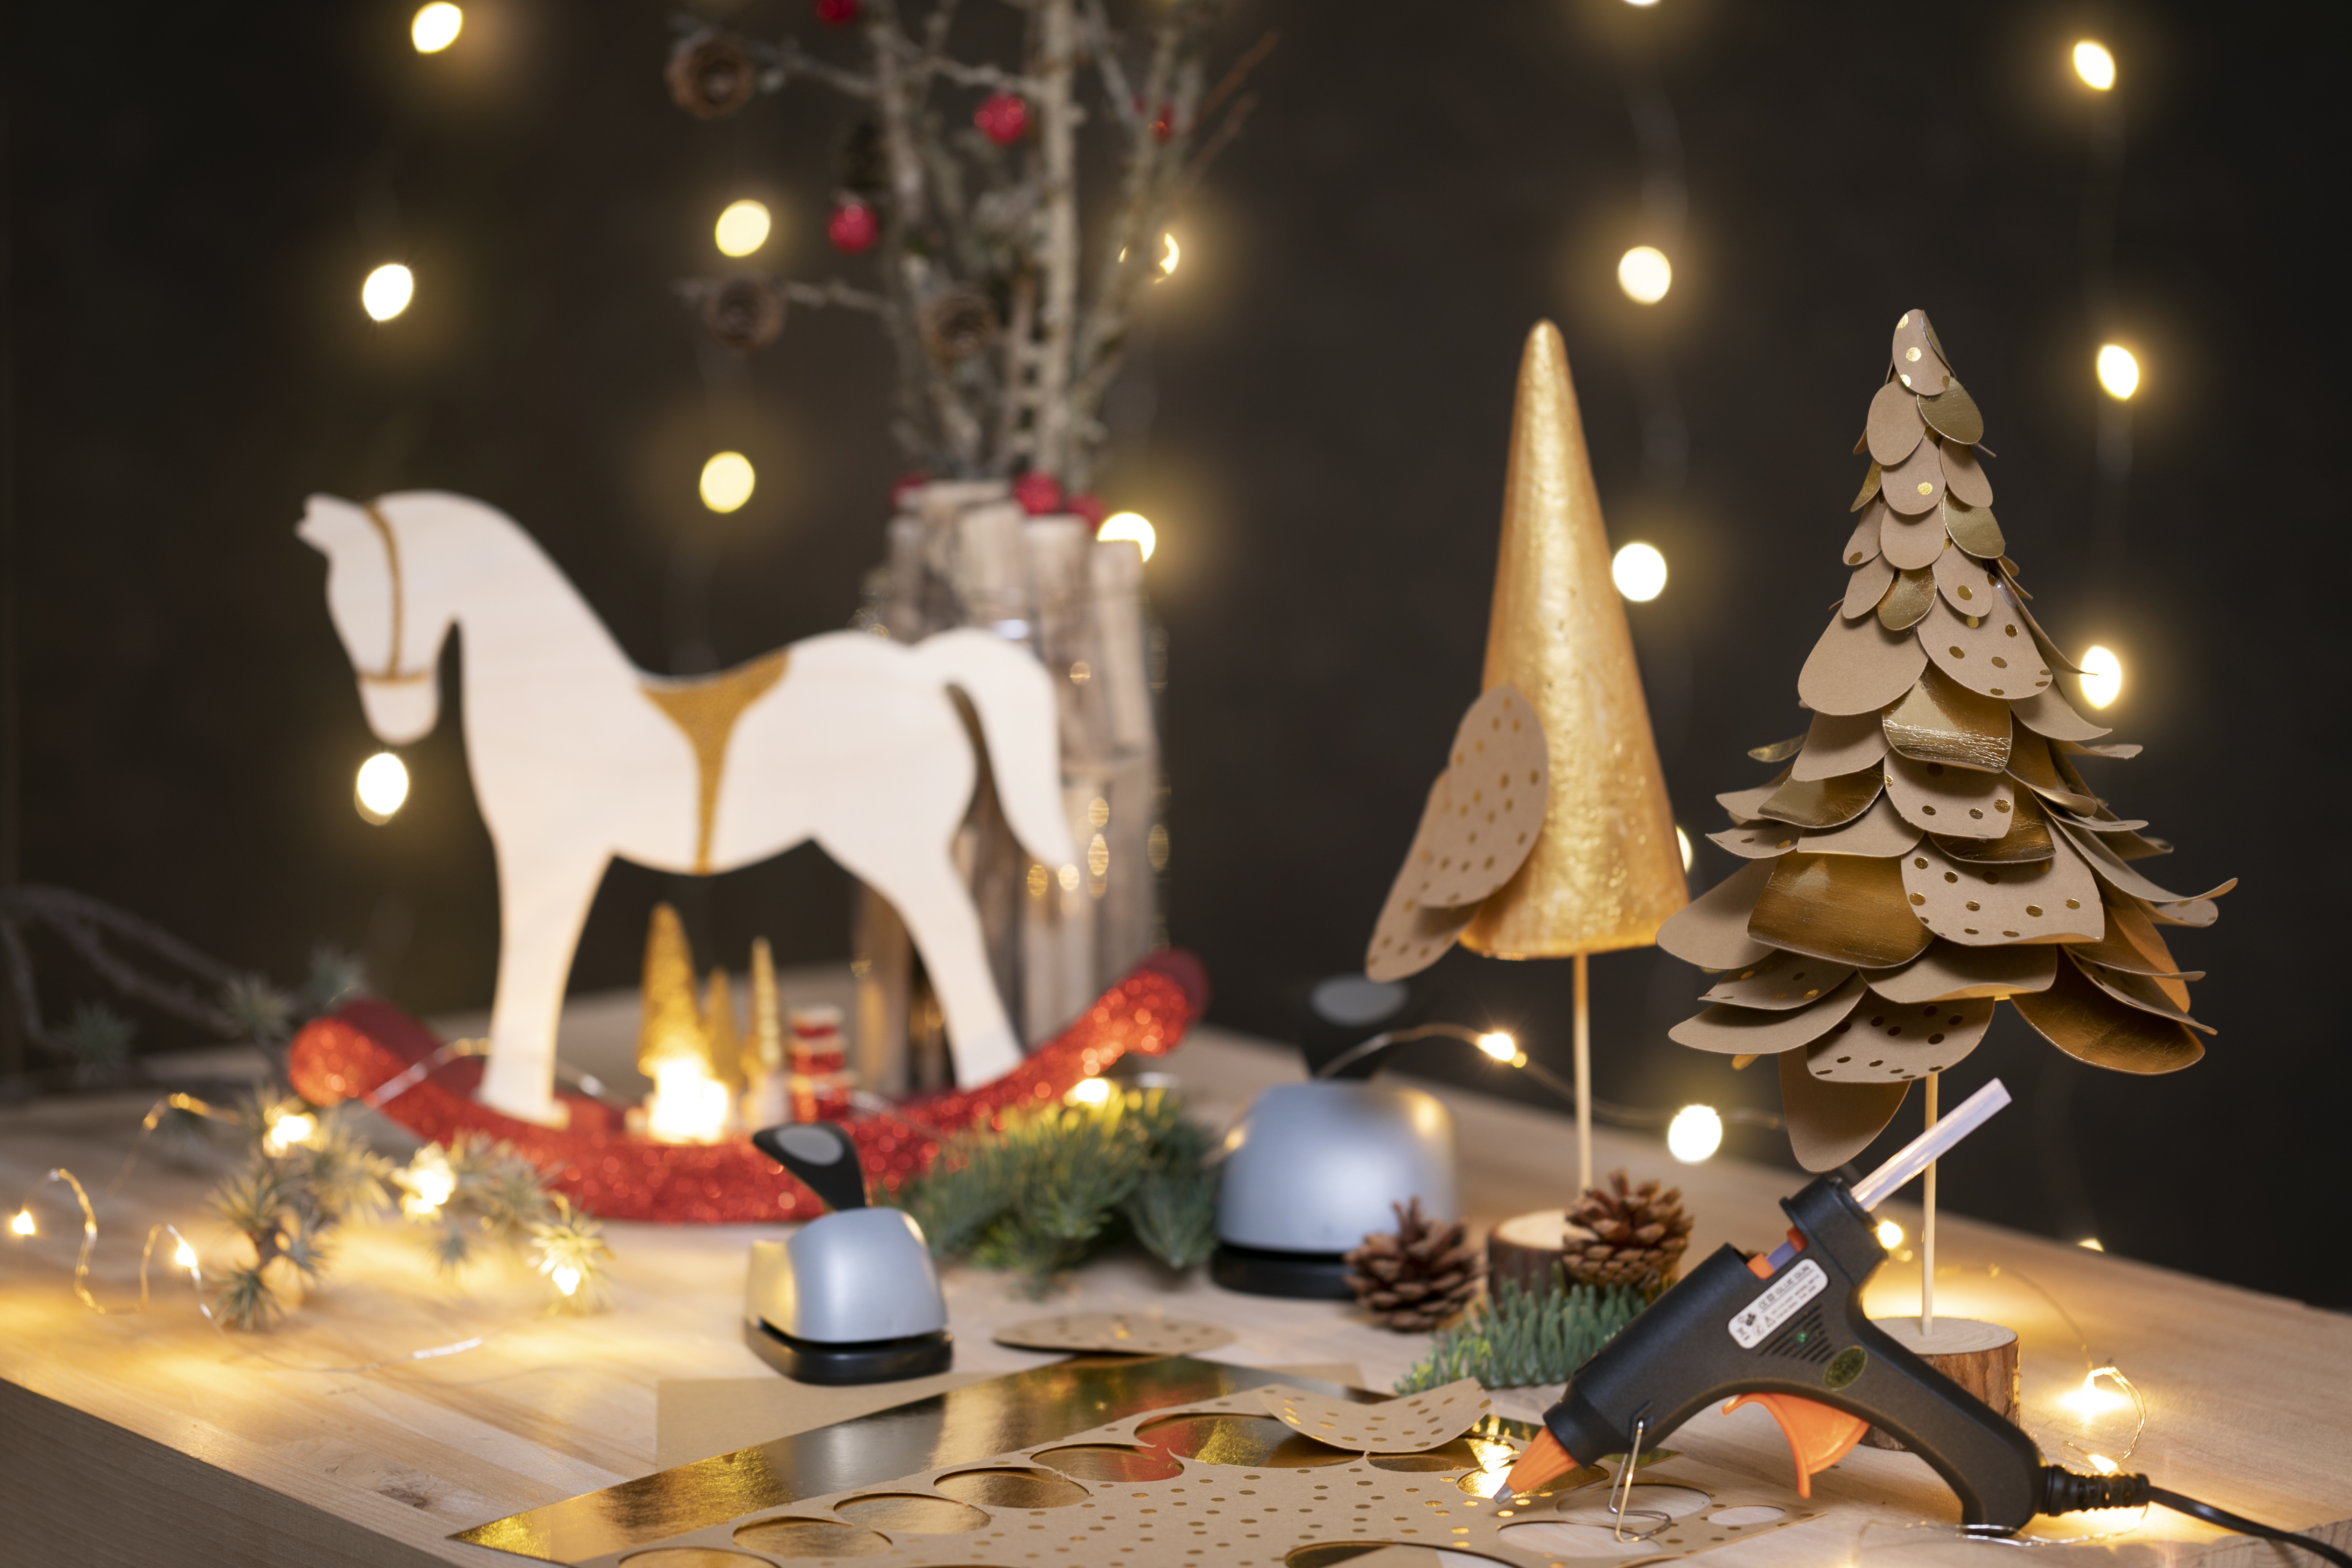 Proficiat Augment Toestand Nieuwe DIY kerstdecoraties voor Kerst 2019 - CChobby Blog